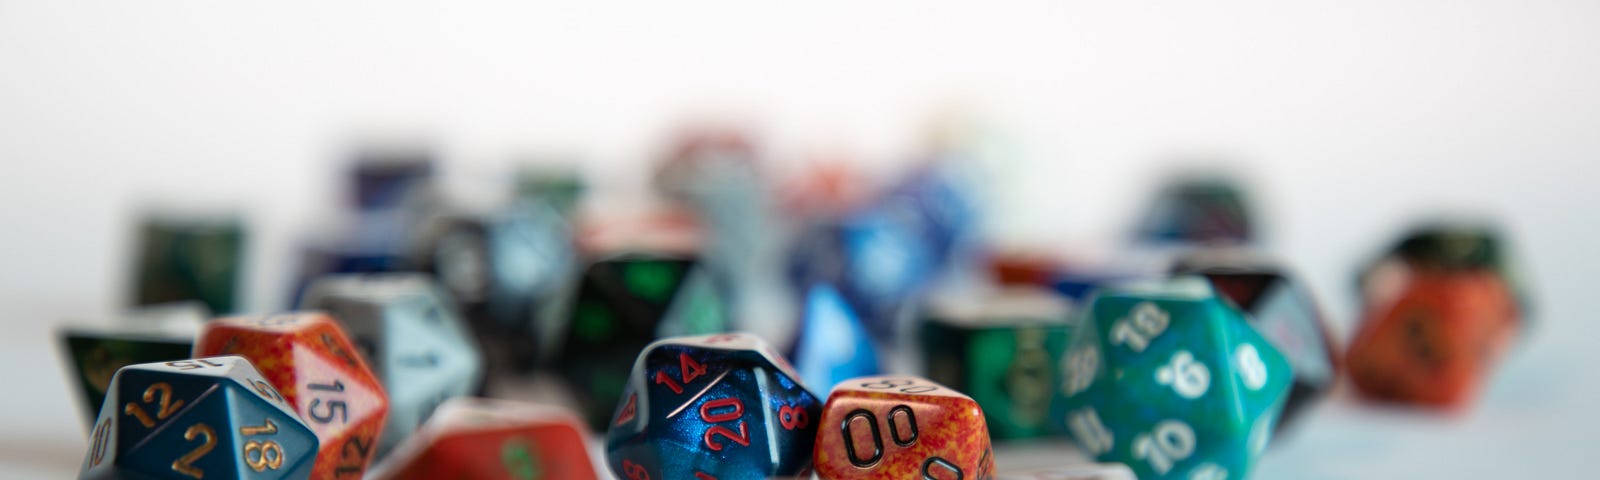 Photo of D&D dice taken by Jim Zavala